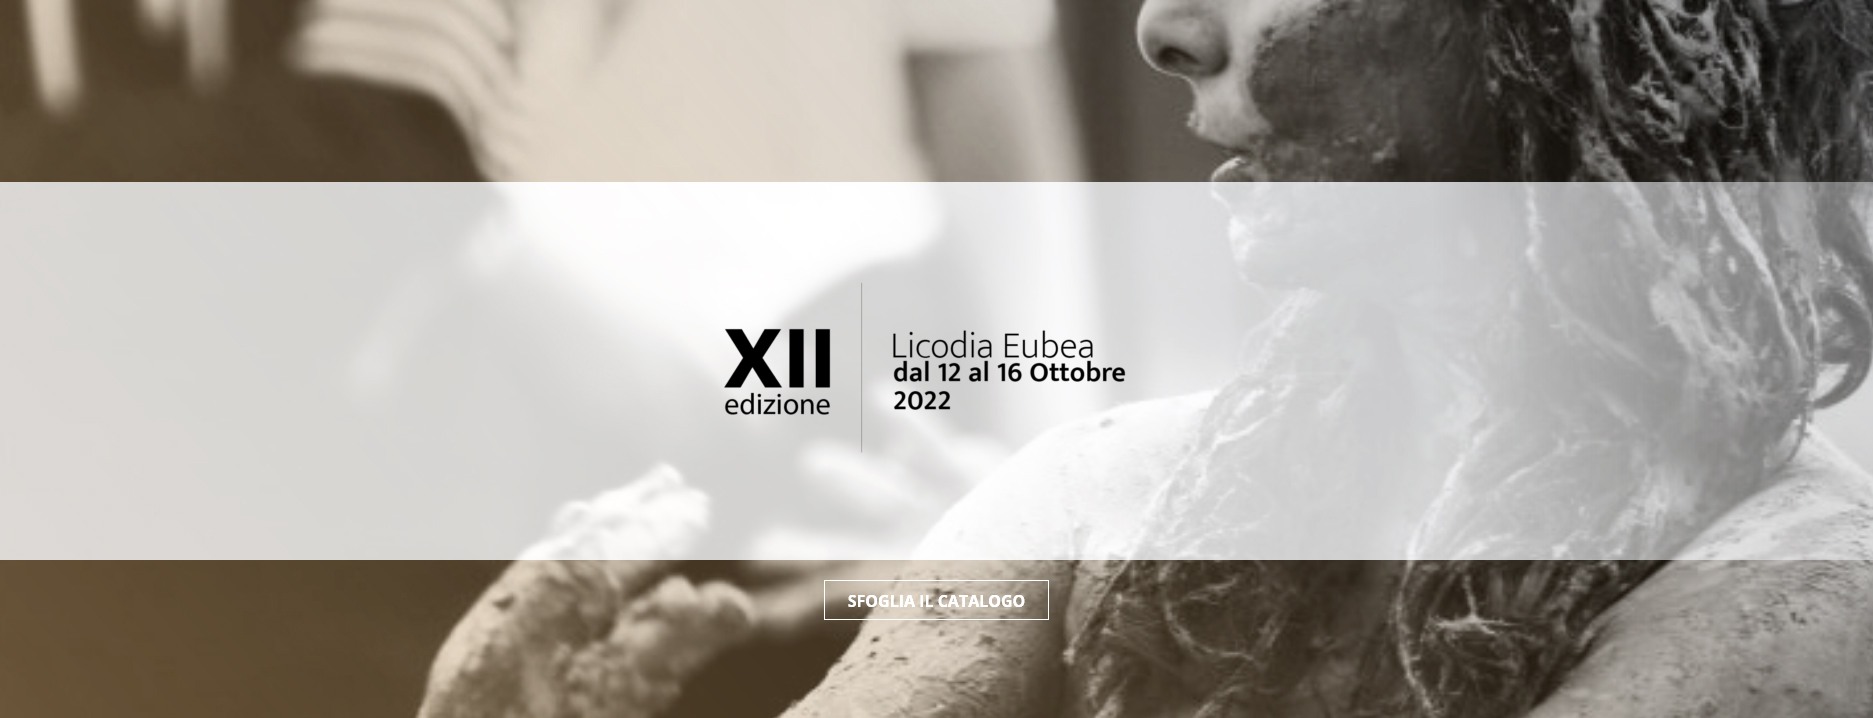 XII edizione Festival Licodia Eubea